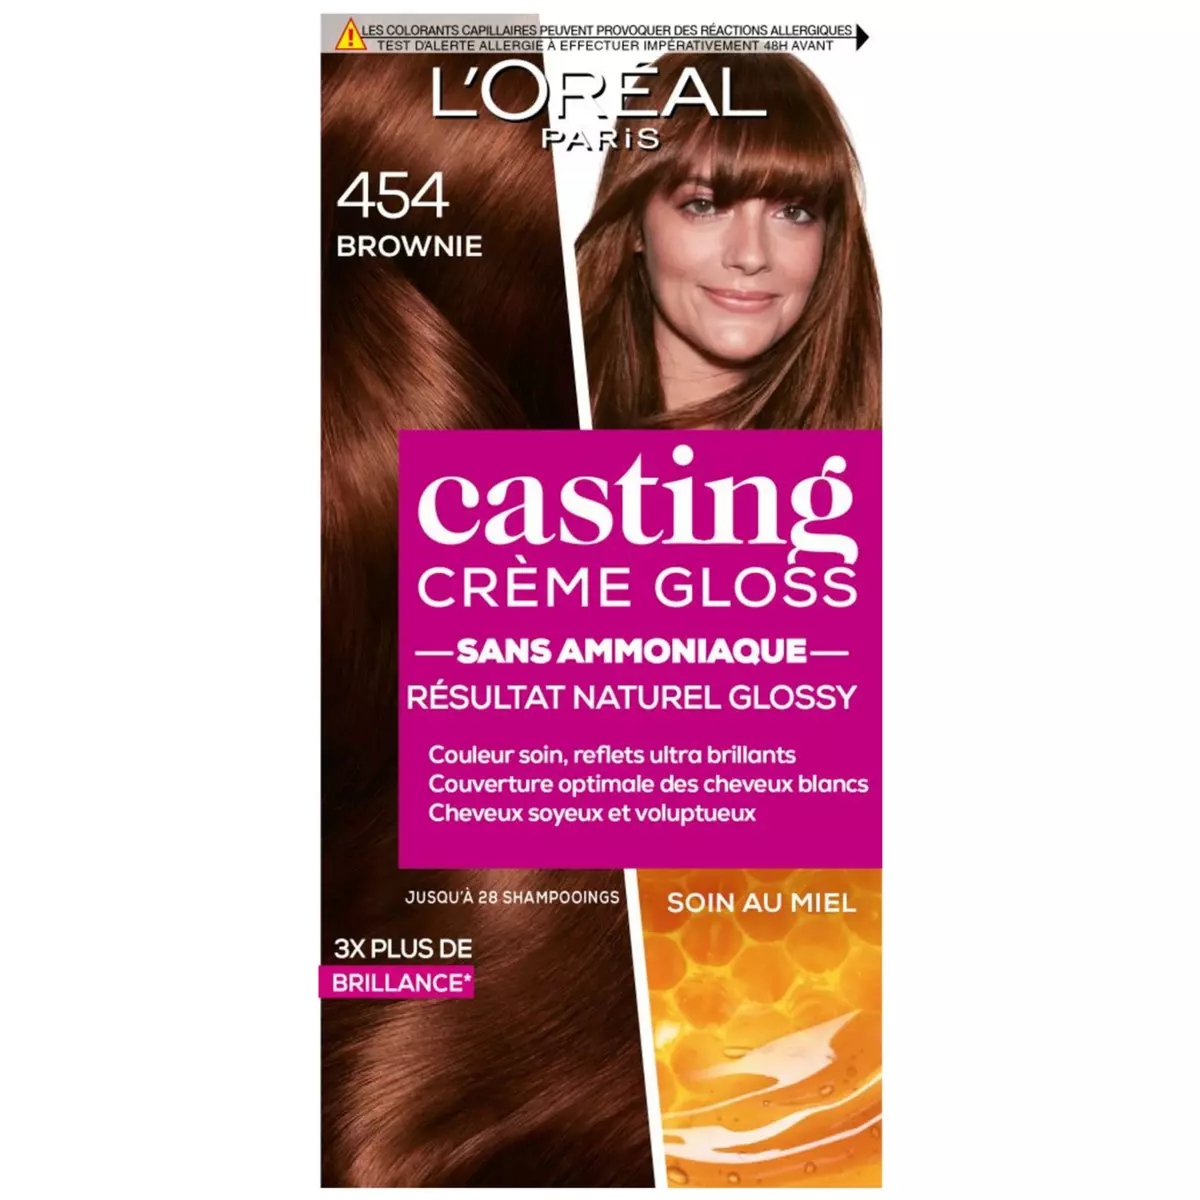 L'OREAL Casting Crème Gloss coloration sans ammoniaque 454 brownie 3 produits 1 kit